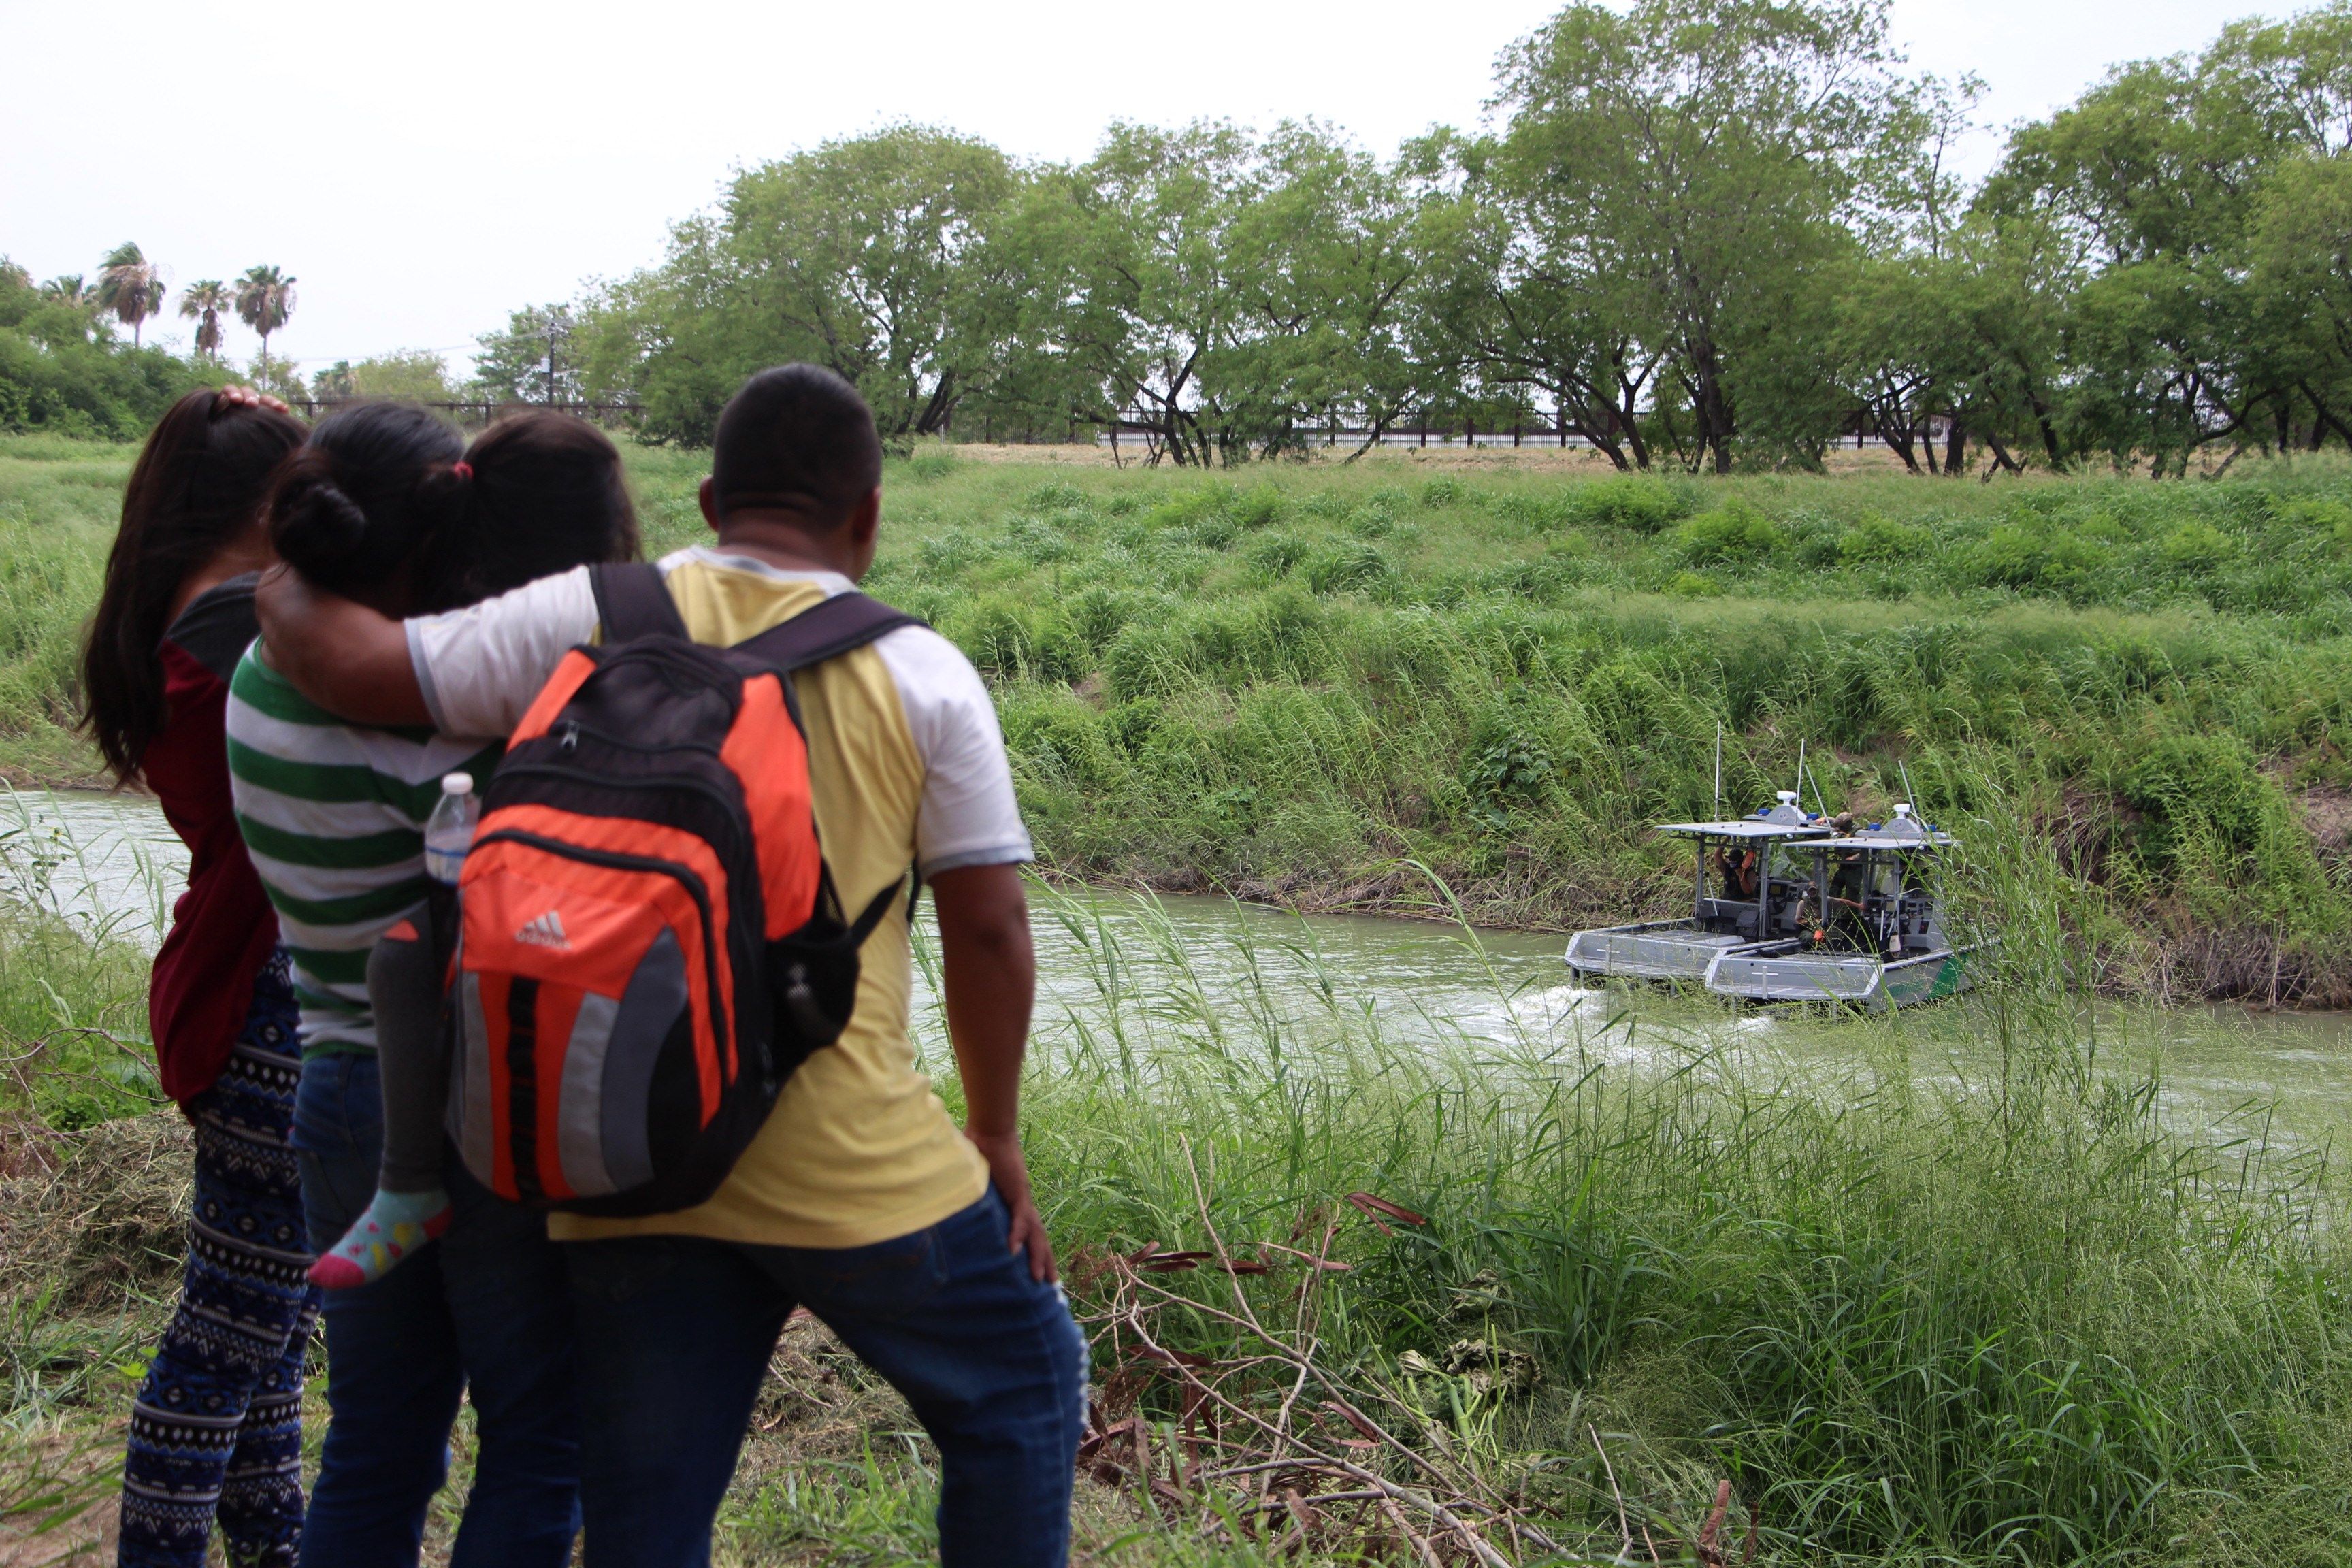  La dura odisea de los menores de edad que cruzan México para llegar a EUA